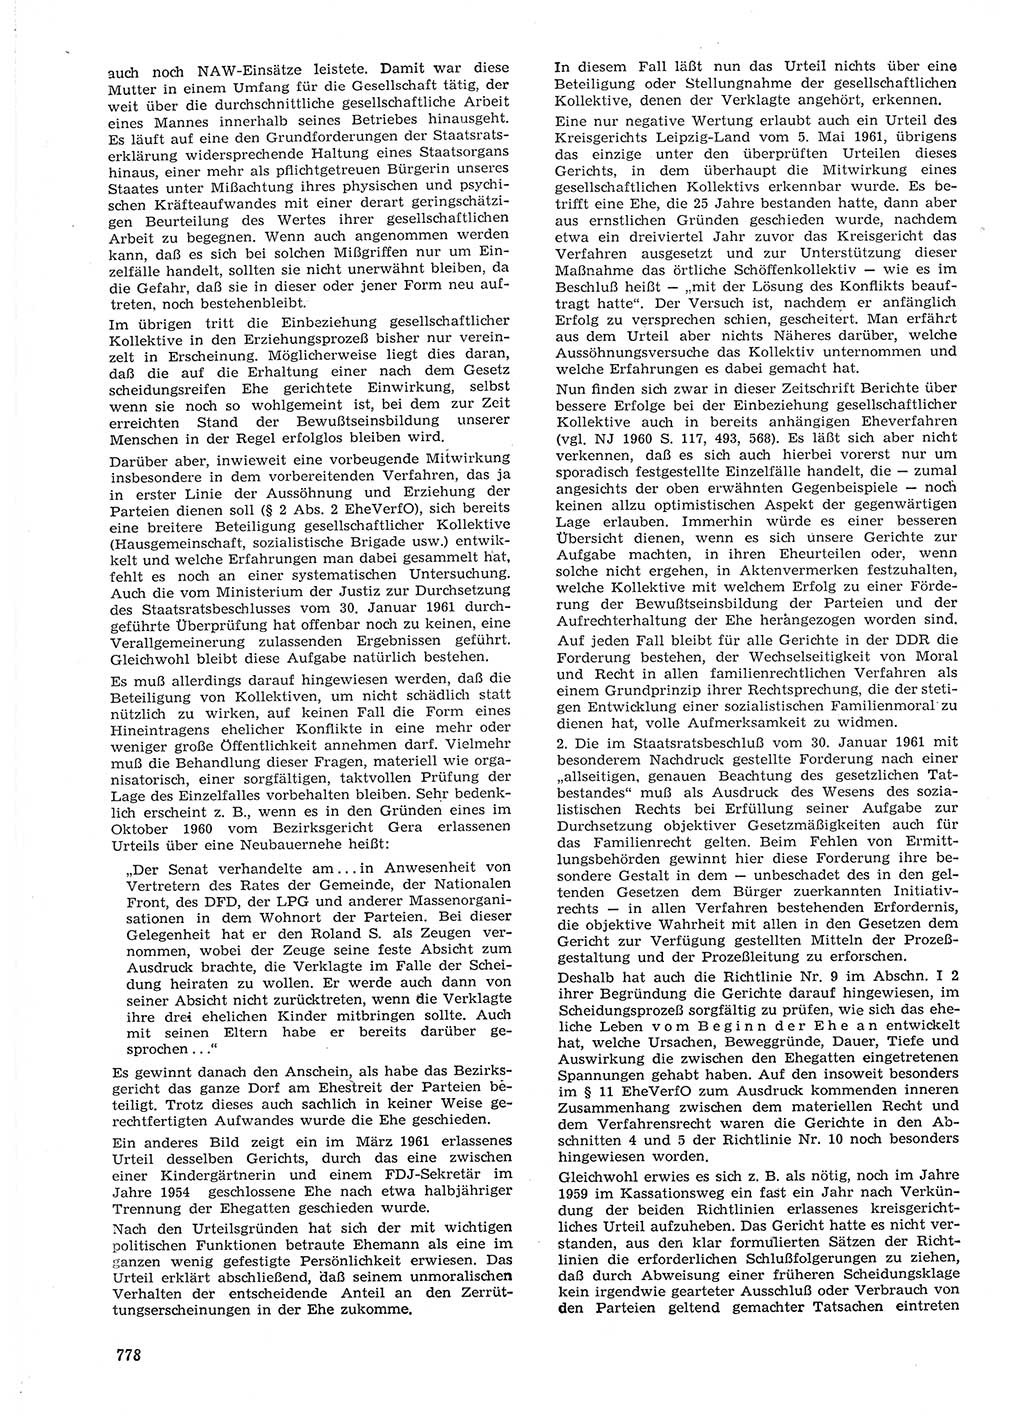 Neue Justiz (NJ), Zeitschrift für Recht und Rechtswissenschaft [Deutsche Demokratische Republik (DDR)], 15. Jahrgang 1961, Seite 778 (NJ DDR 1961, S. 778)